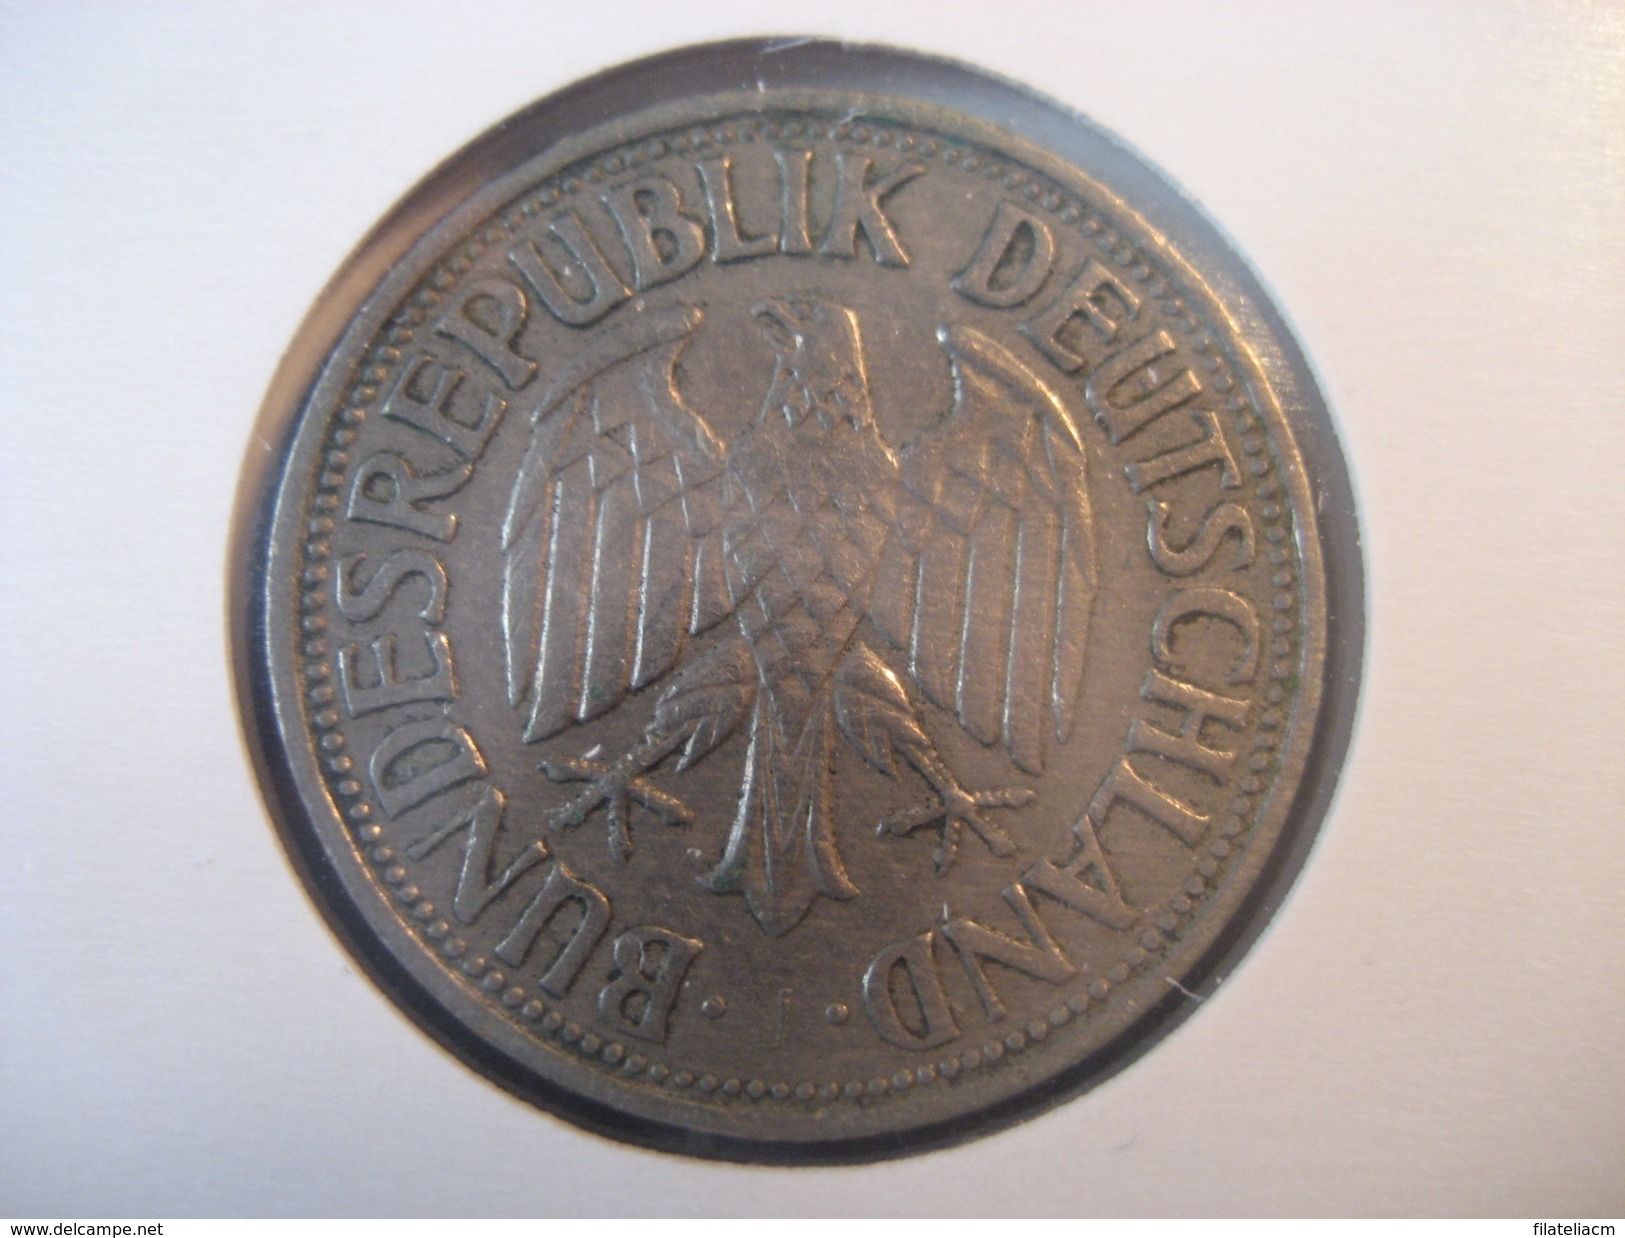 1 Deutsche Mark 1955 BUNDESREPUBLIK DEUTSCHLAND Coin Germany Allemagne - 1 Mark